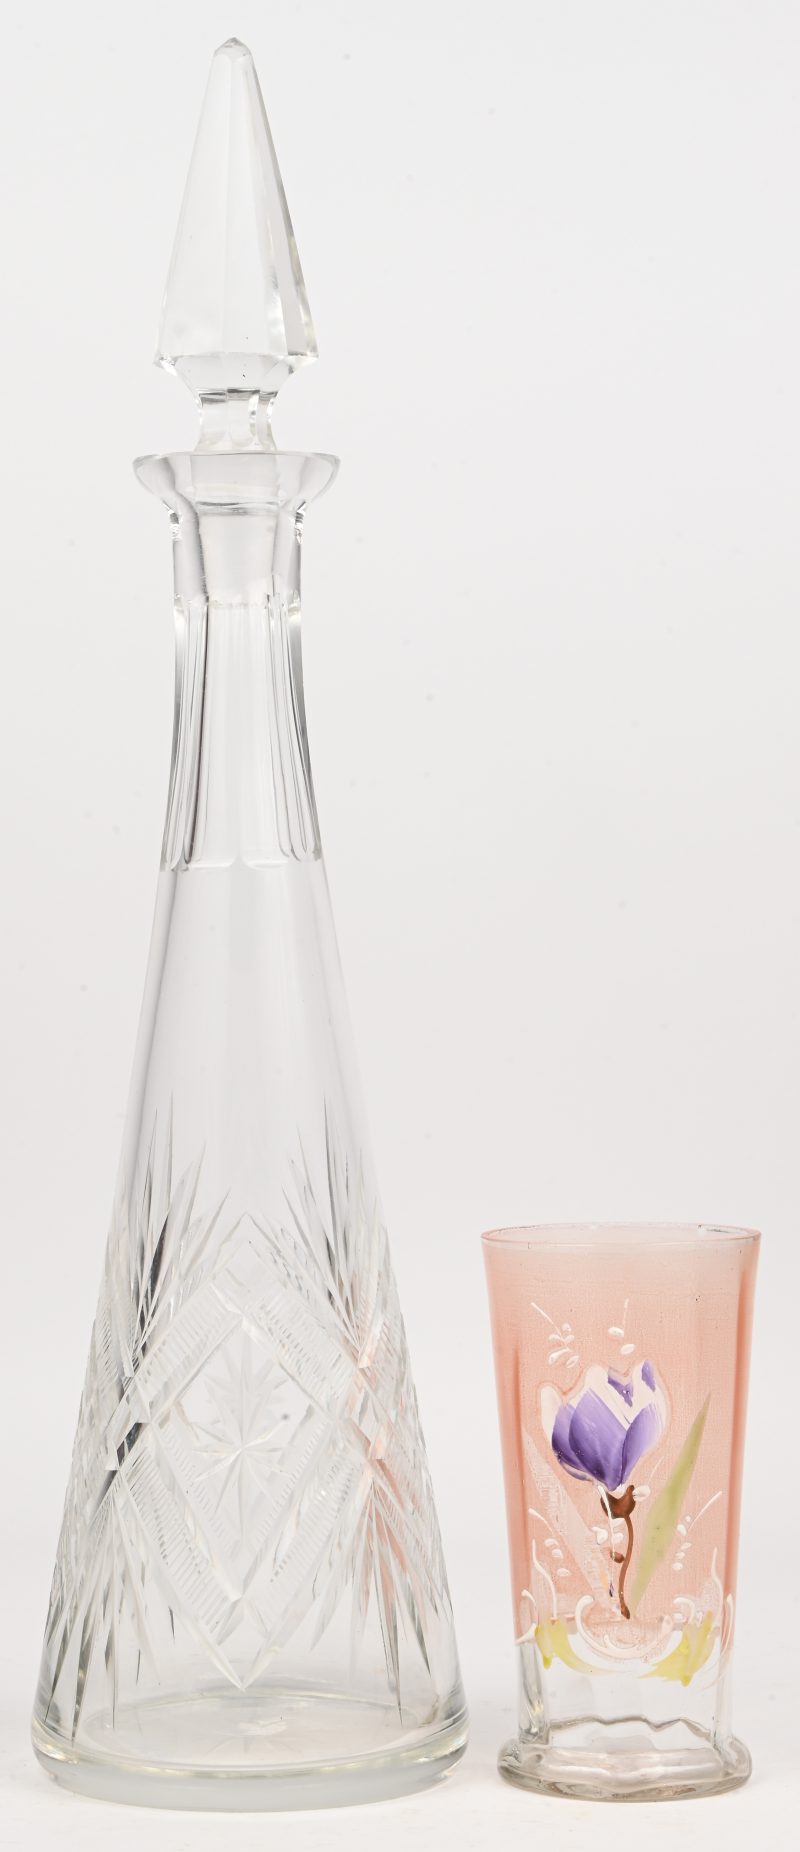 Een kleurloze, geslepen glazen kegelvormige karaf, evenas een roze glazen glas versierd met een koudgeschilderde krokus. Omstreeks 1900.